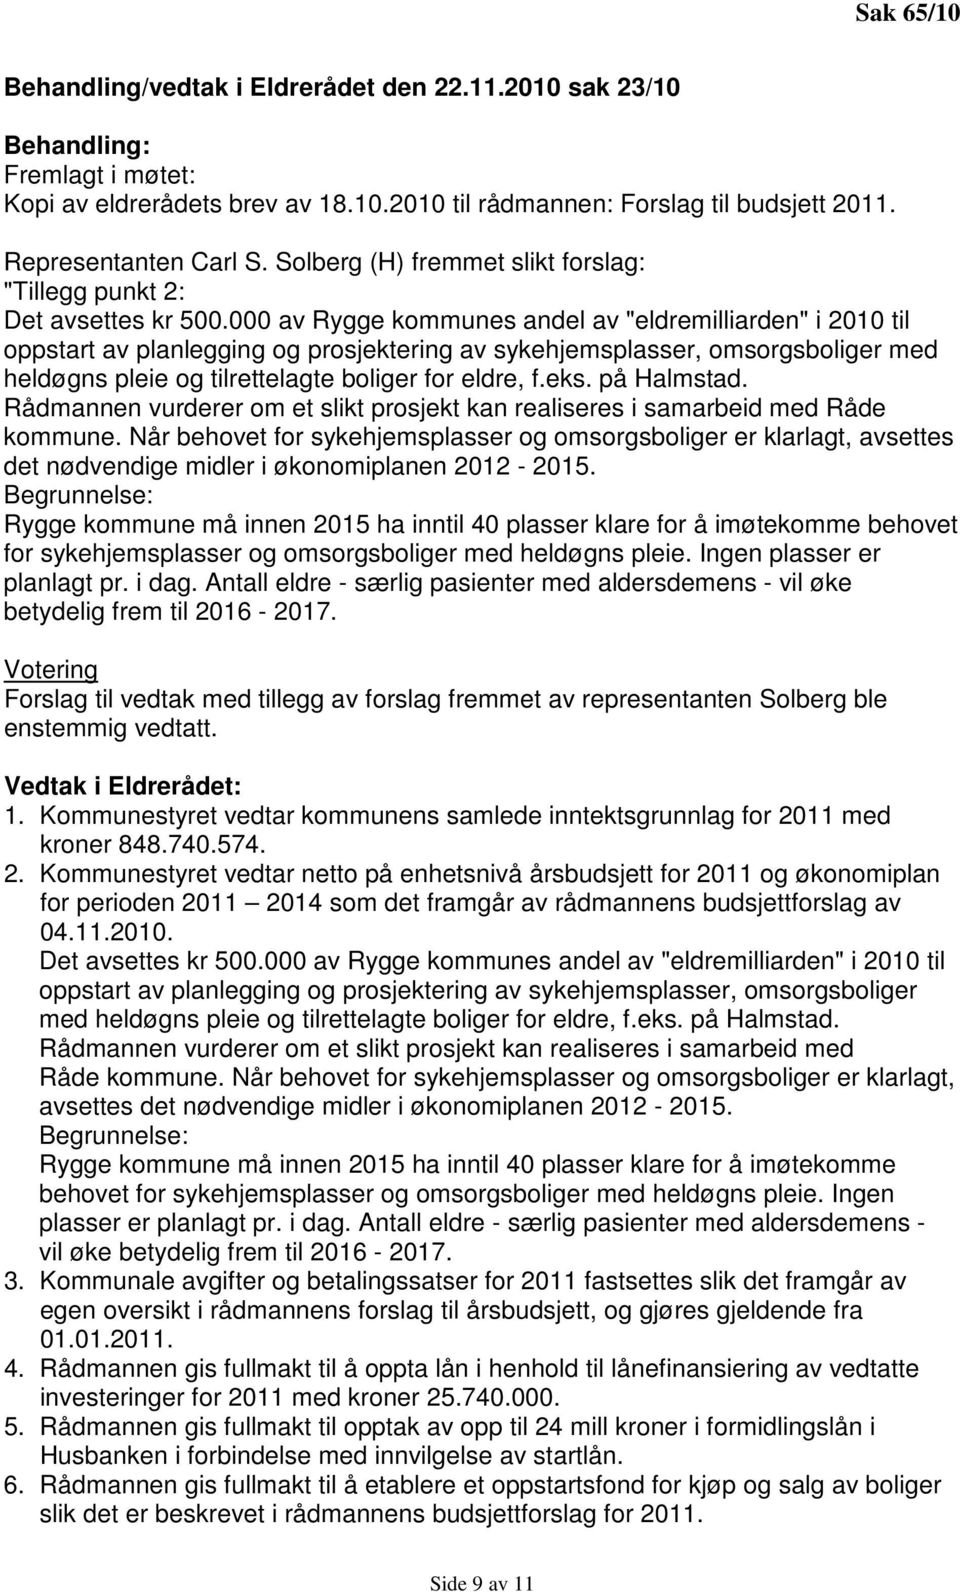 000 av Rygge kommunes andel av "eldremilliarden" i 2010 til oppstart av planlegging og prosjektering av sykehjemsplasser, omsorgsboliger med heldøgns pleie og tilrettelagte boliger for eldre, f.eks.